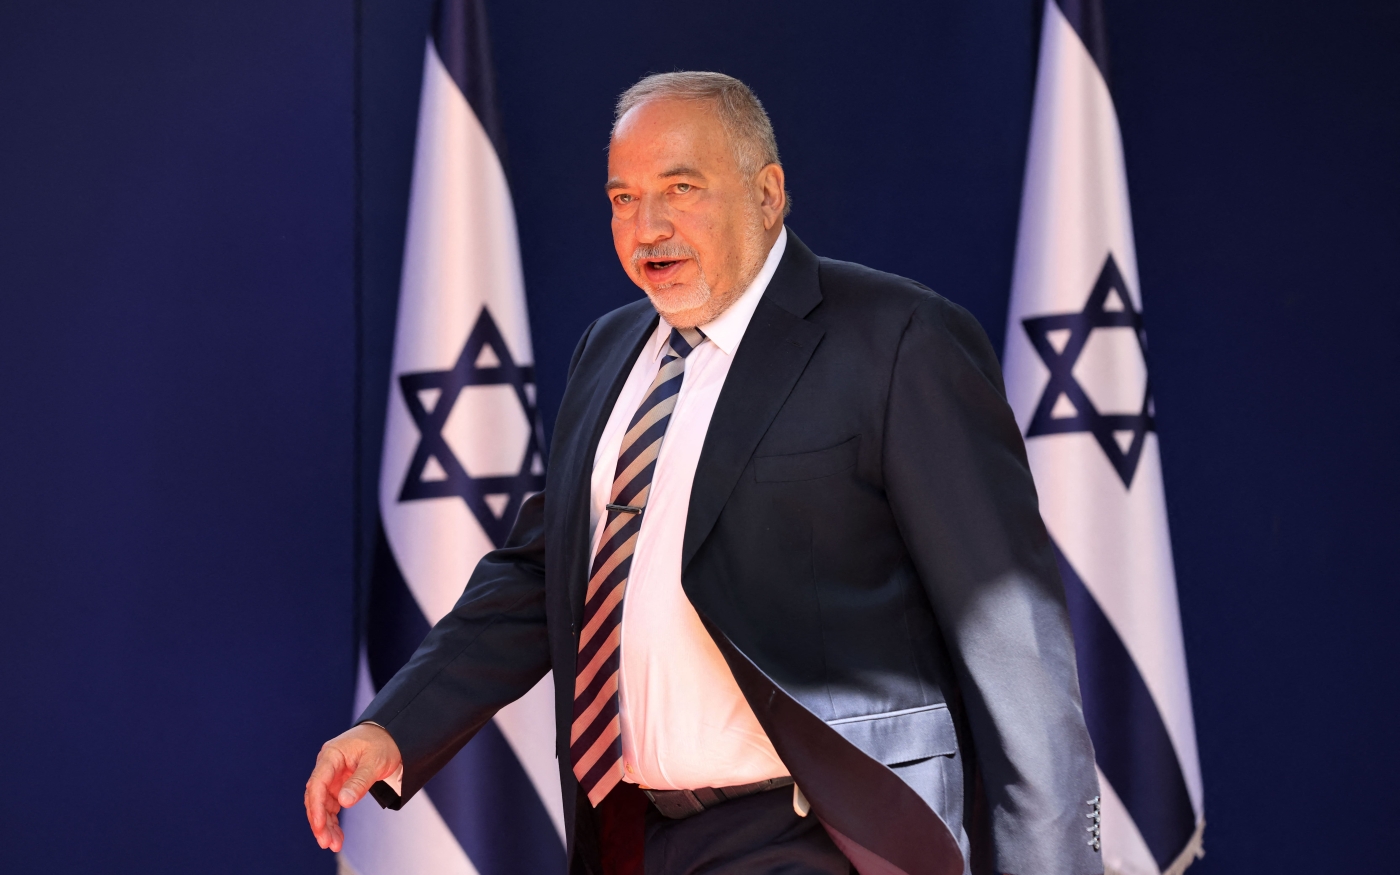 Avigdor Lieberman, nationaliste laïc de droite qui dirige le parti Israel Beitenou, arrive à la résidence du président à Jérusalem, le 14 juin 2021 (AFP)